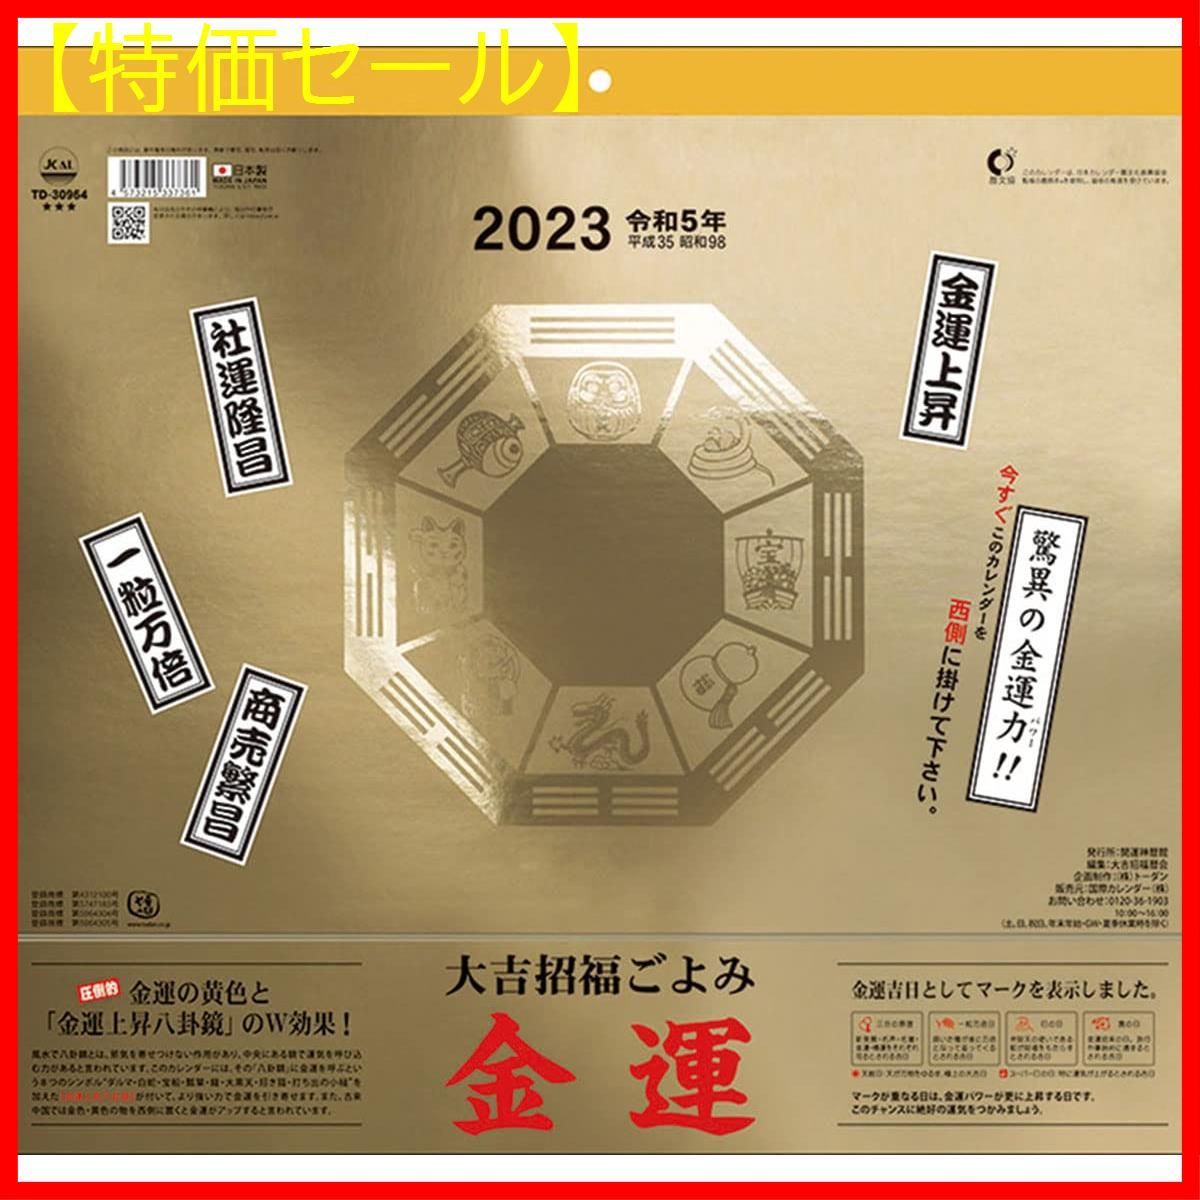 【特価セール】2023年 カレンダー 大吉招福ごよみ・金運 CL23-0665-0